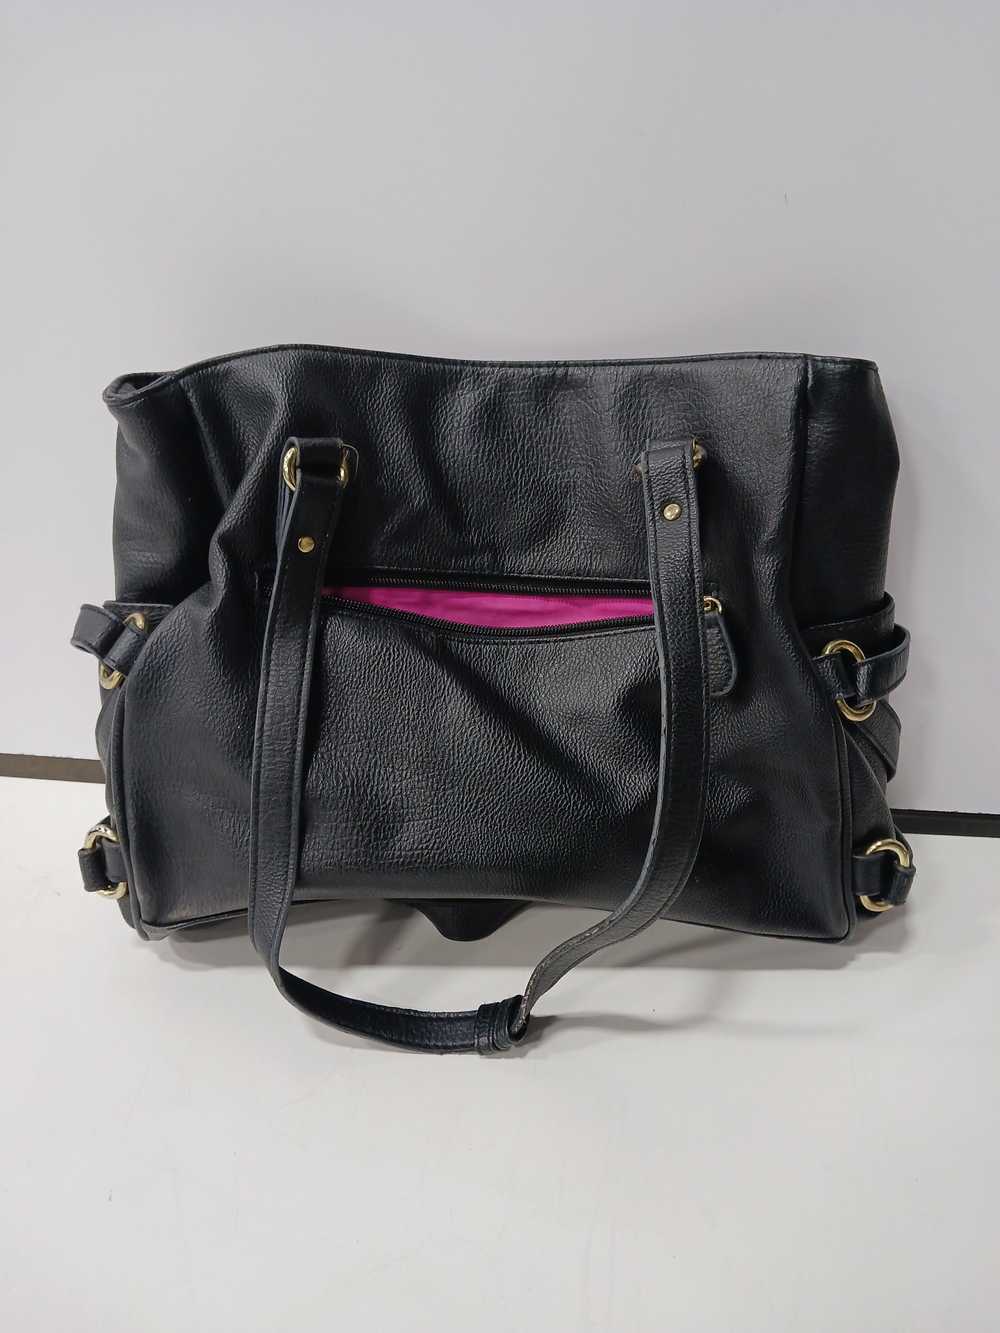 Nicole Miller Black Leather Bag - image 2